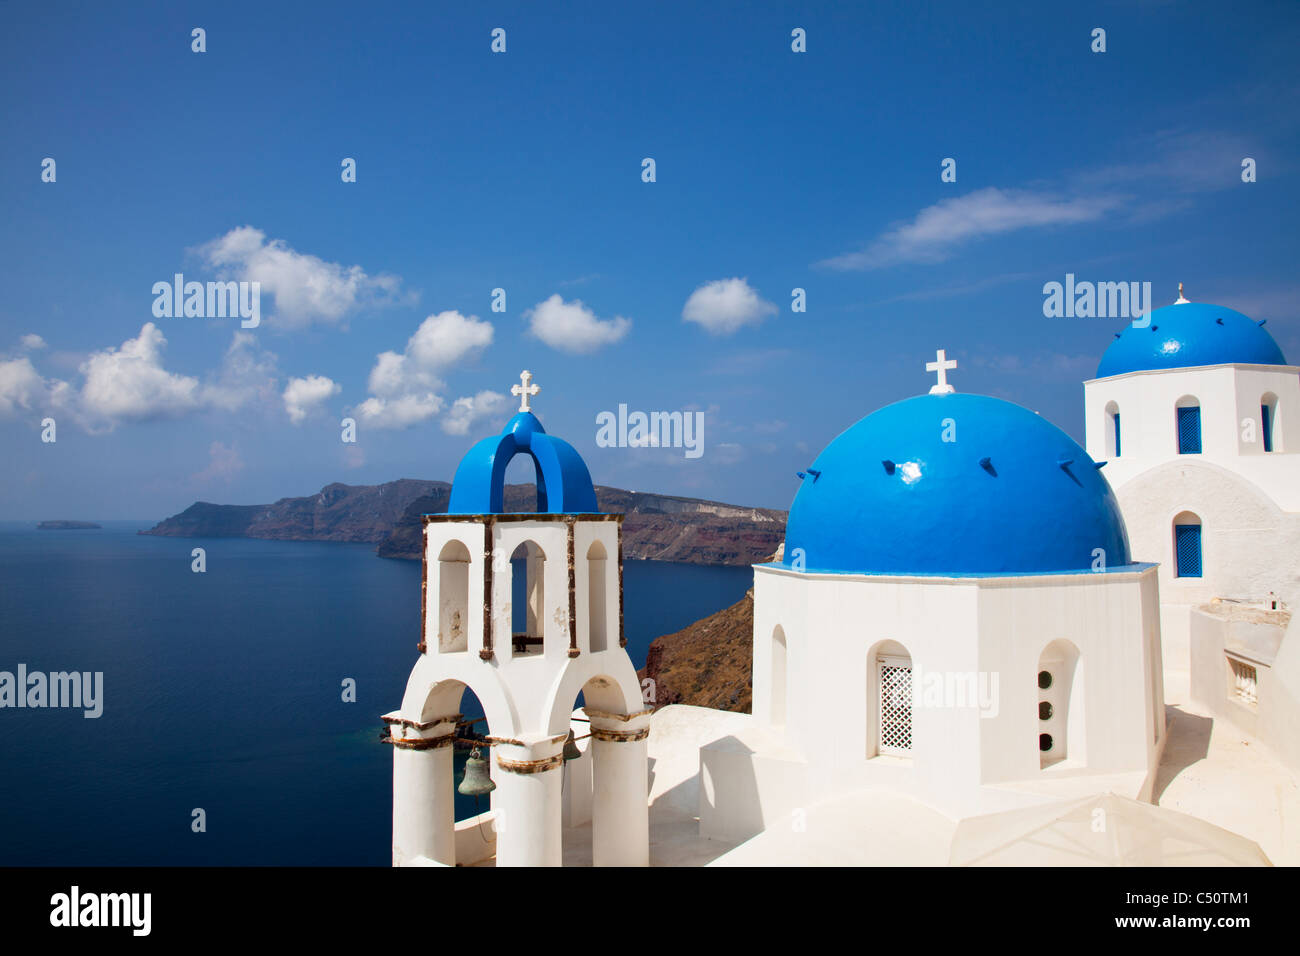 Typique de Santorin île grecque emblématique église au dôme bleu et clocher contre la mer et la Caldeira à Oia Banque D'Images